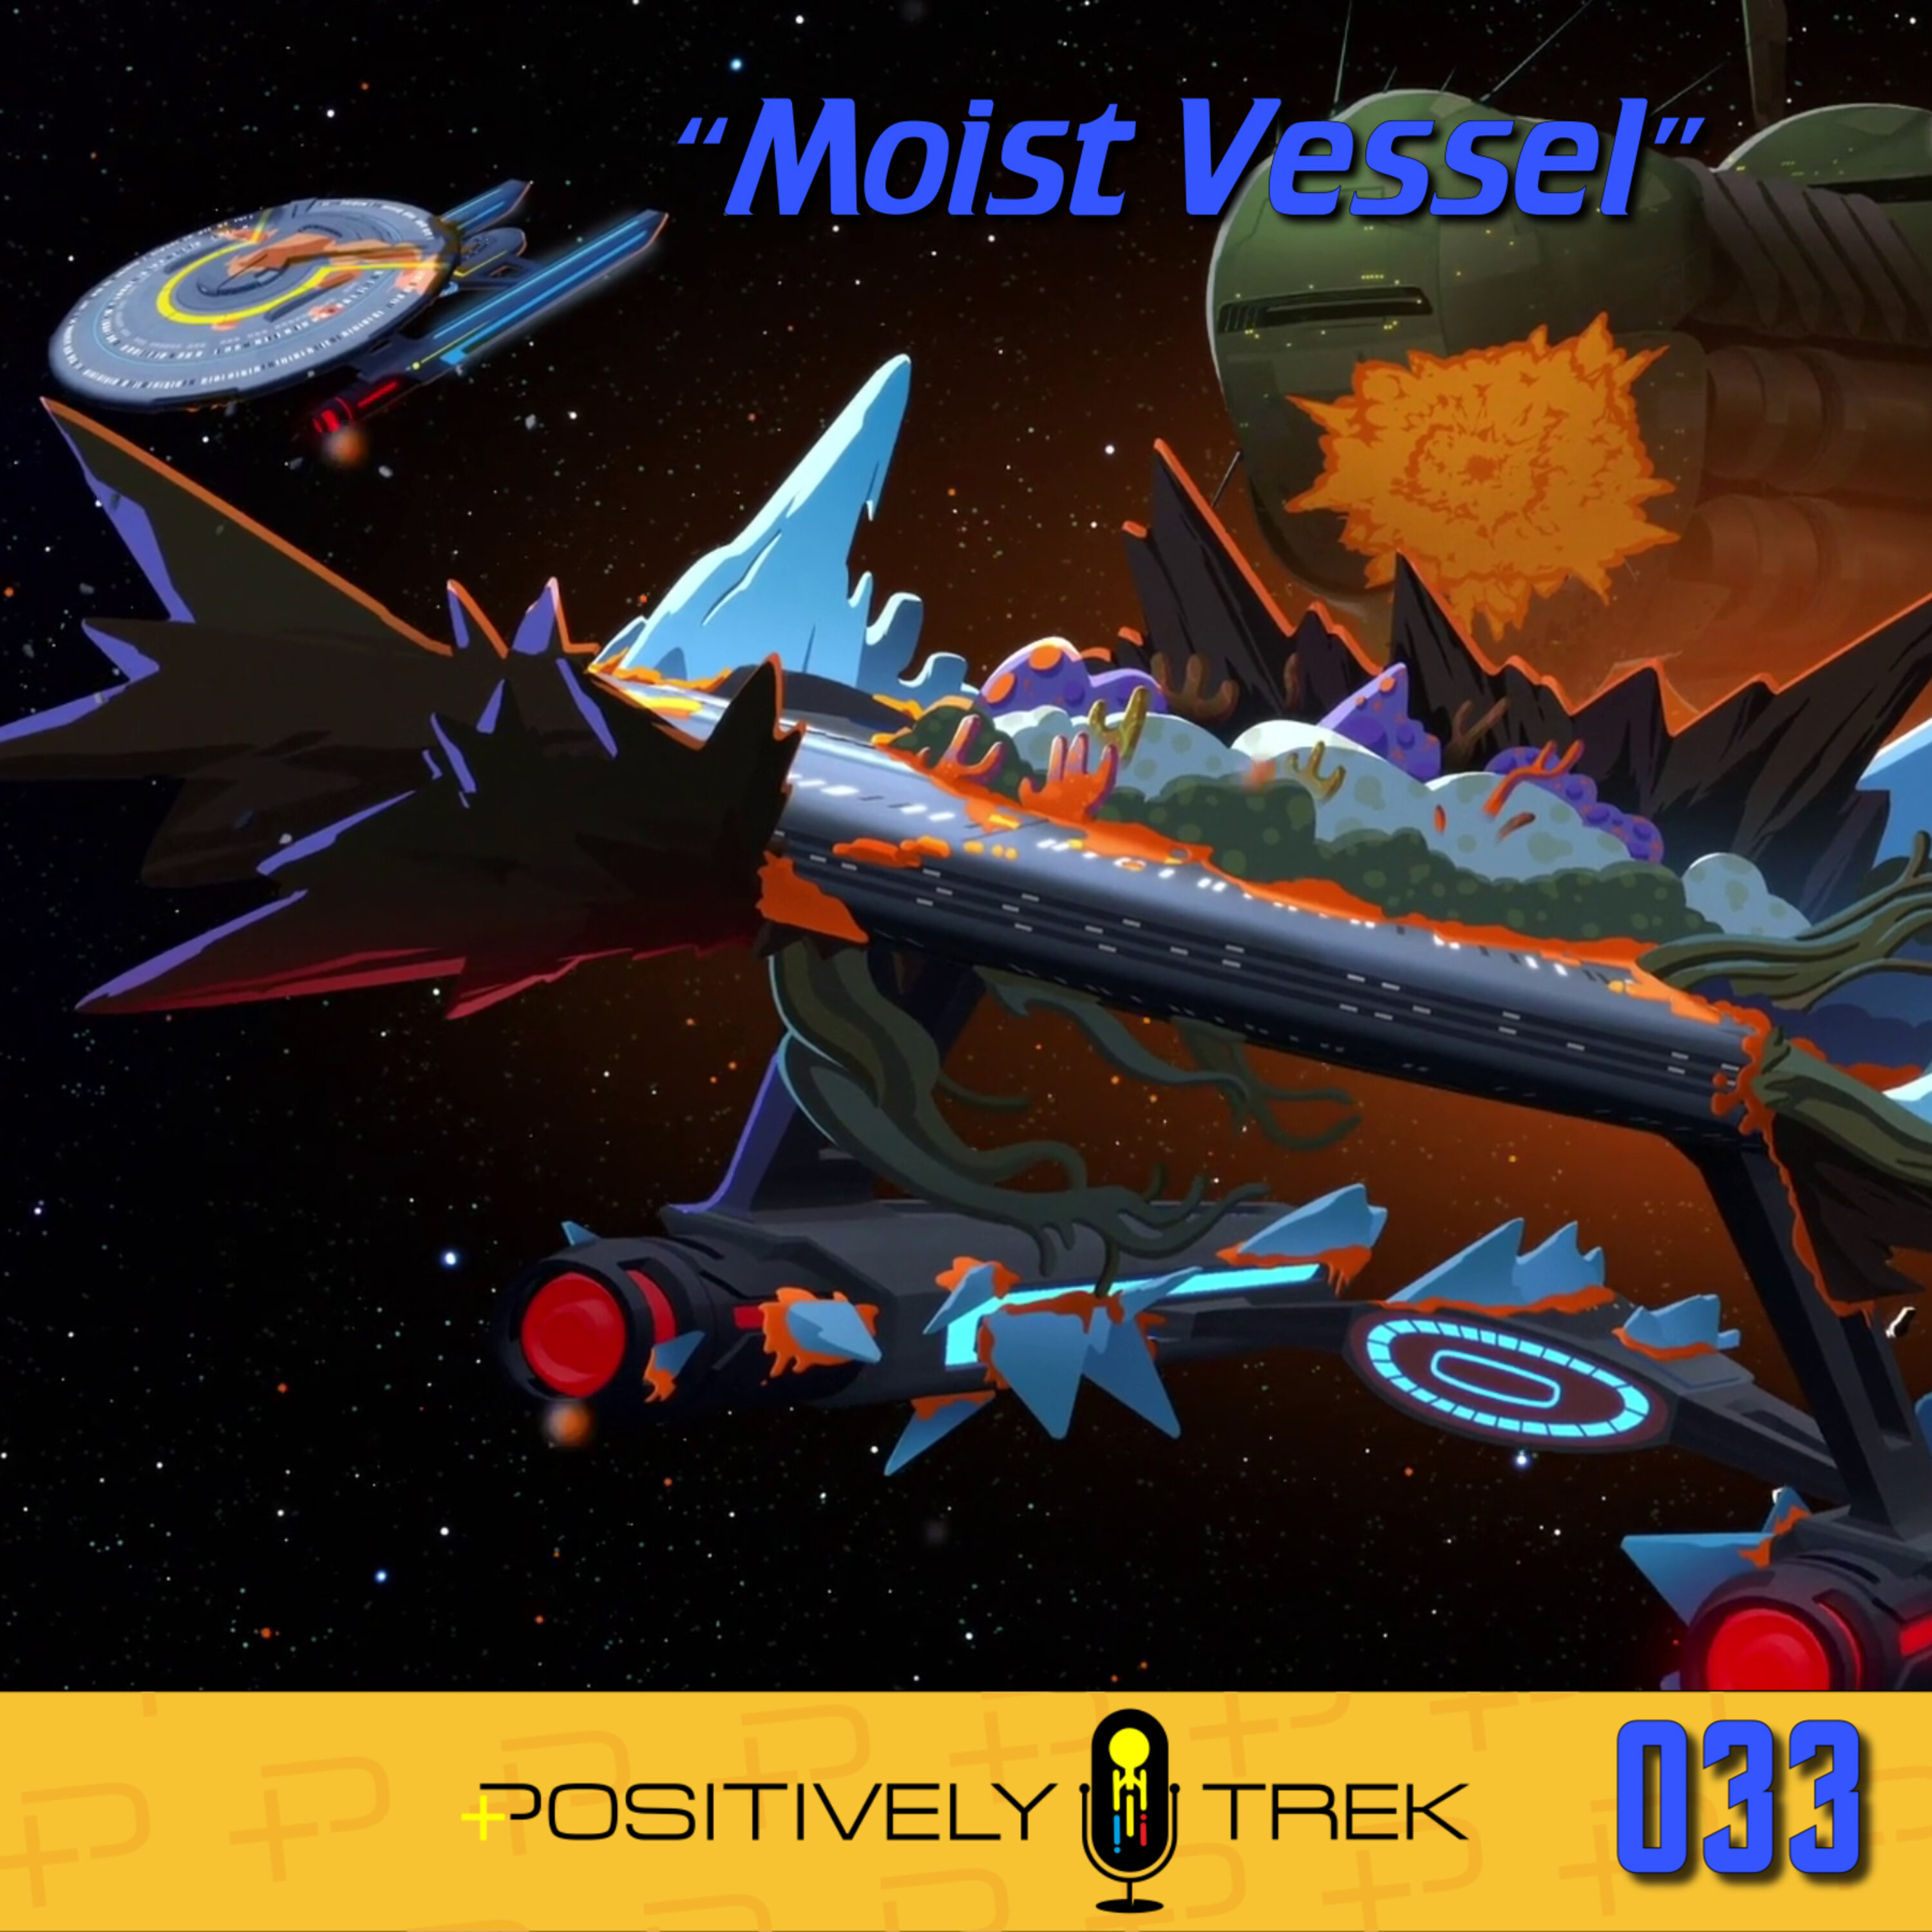 Lower Decks Review: “Moist Vessel” (1.04) Image